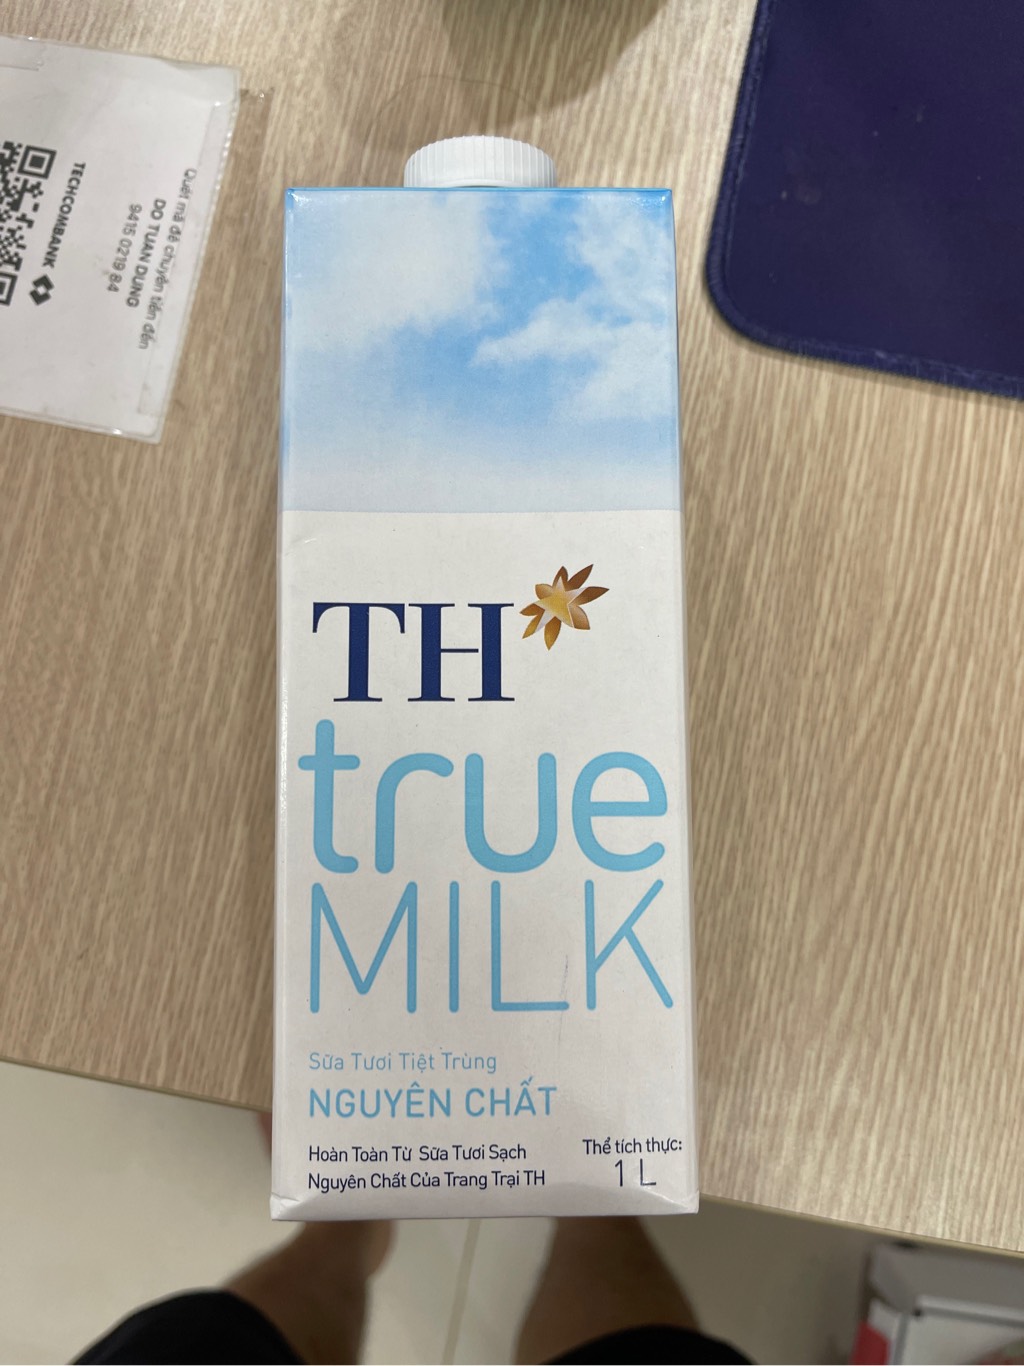 Sữa Tươi Tiệt Trùng Nguyên Chất TH true MILK 1 L TH true milk Nguyên Chất